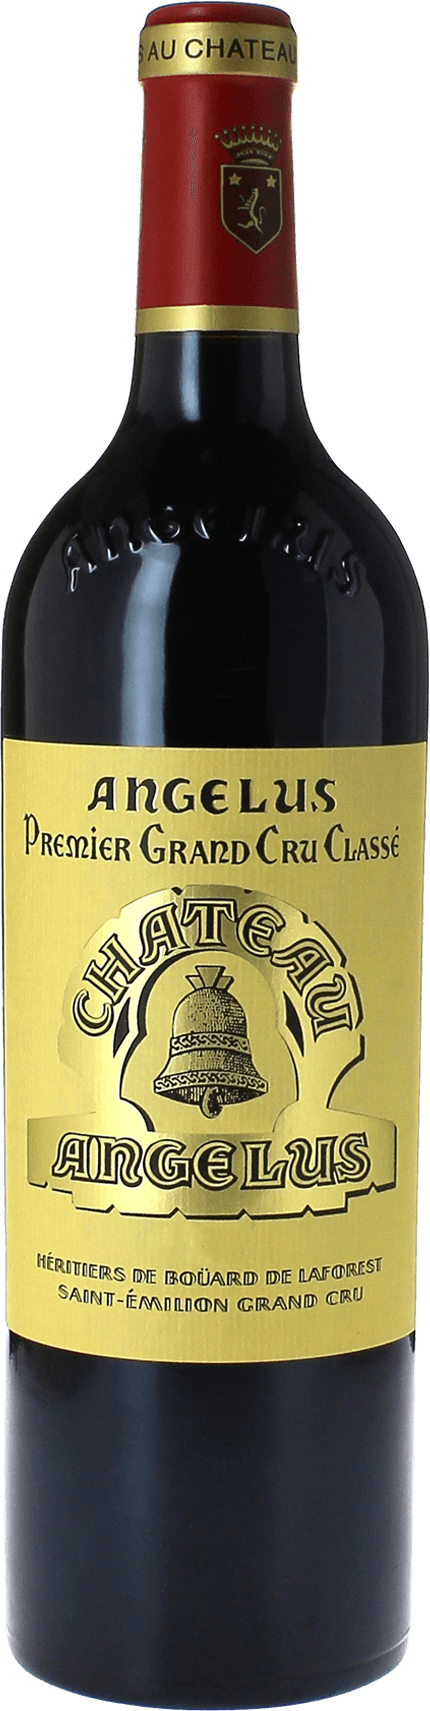 Angelus 2017 1er Grand cru class A Saint-Emilion, Bordeaux rouge